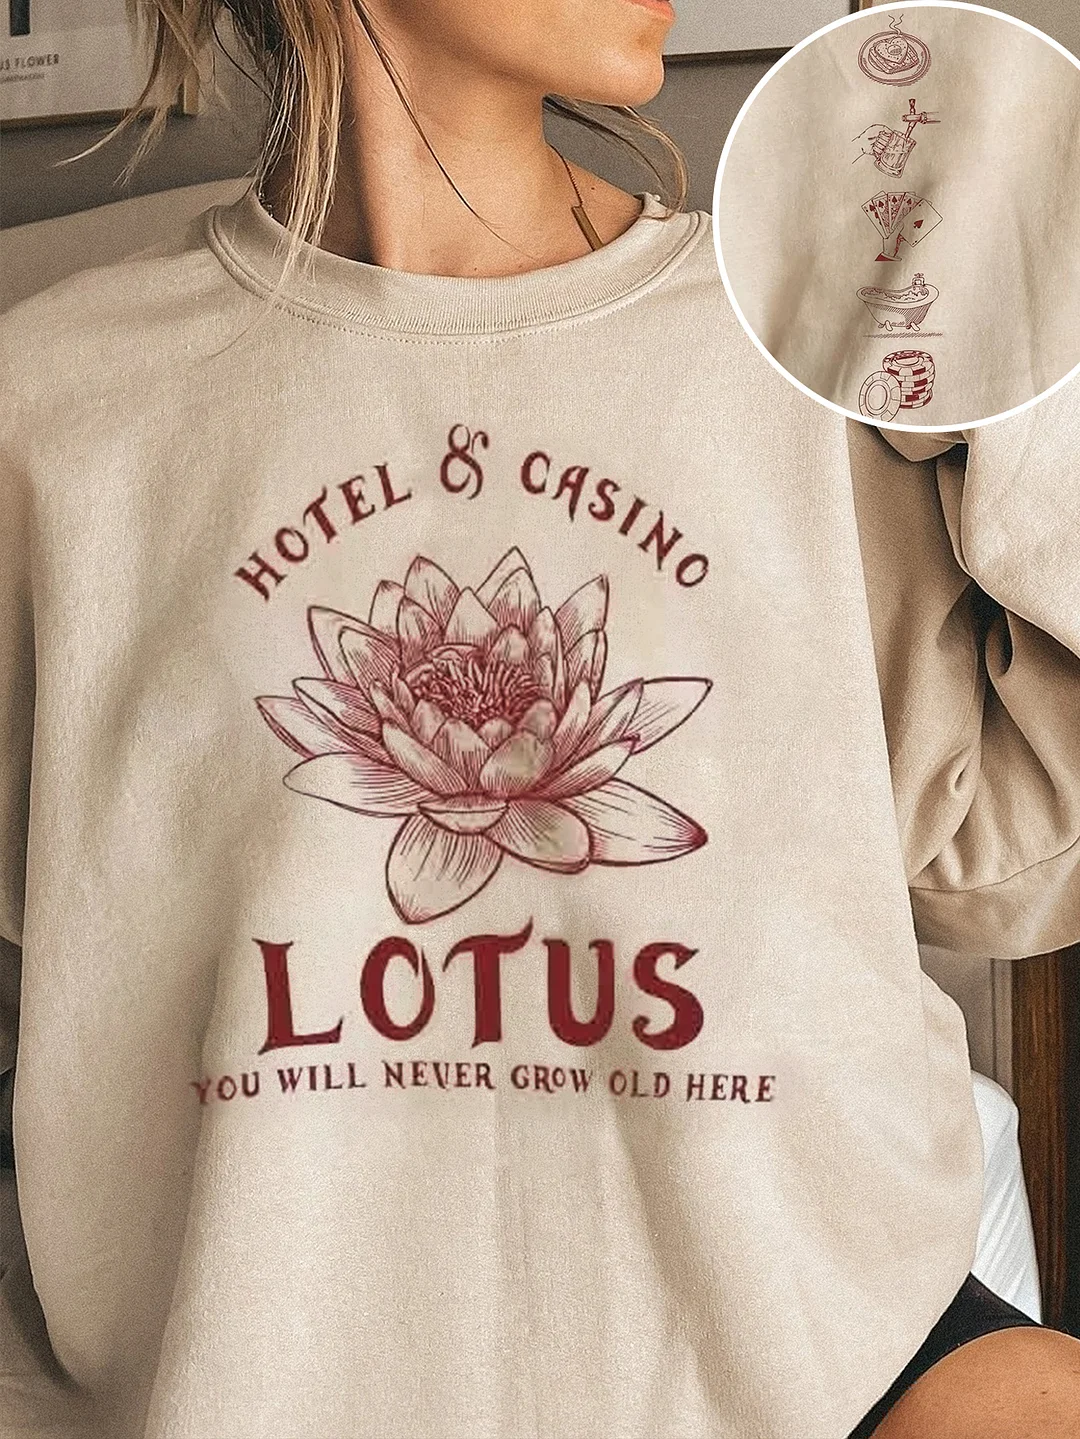 Percy Jackson Lotus Hotel And Casino Sweatshirt / DarkAcademias /Darkacademias